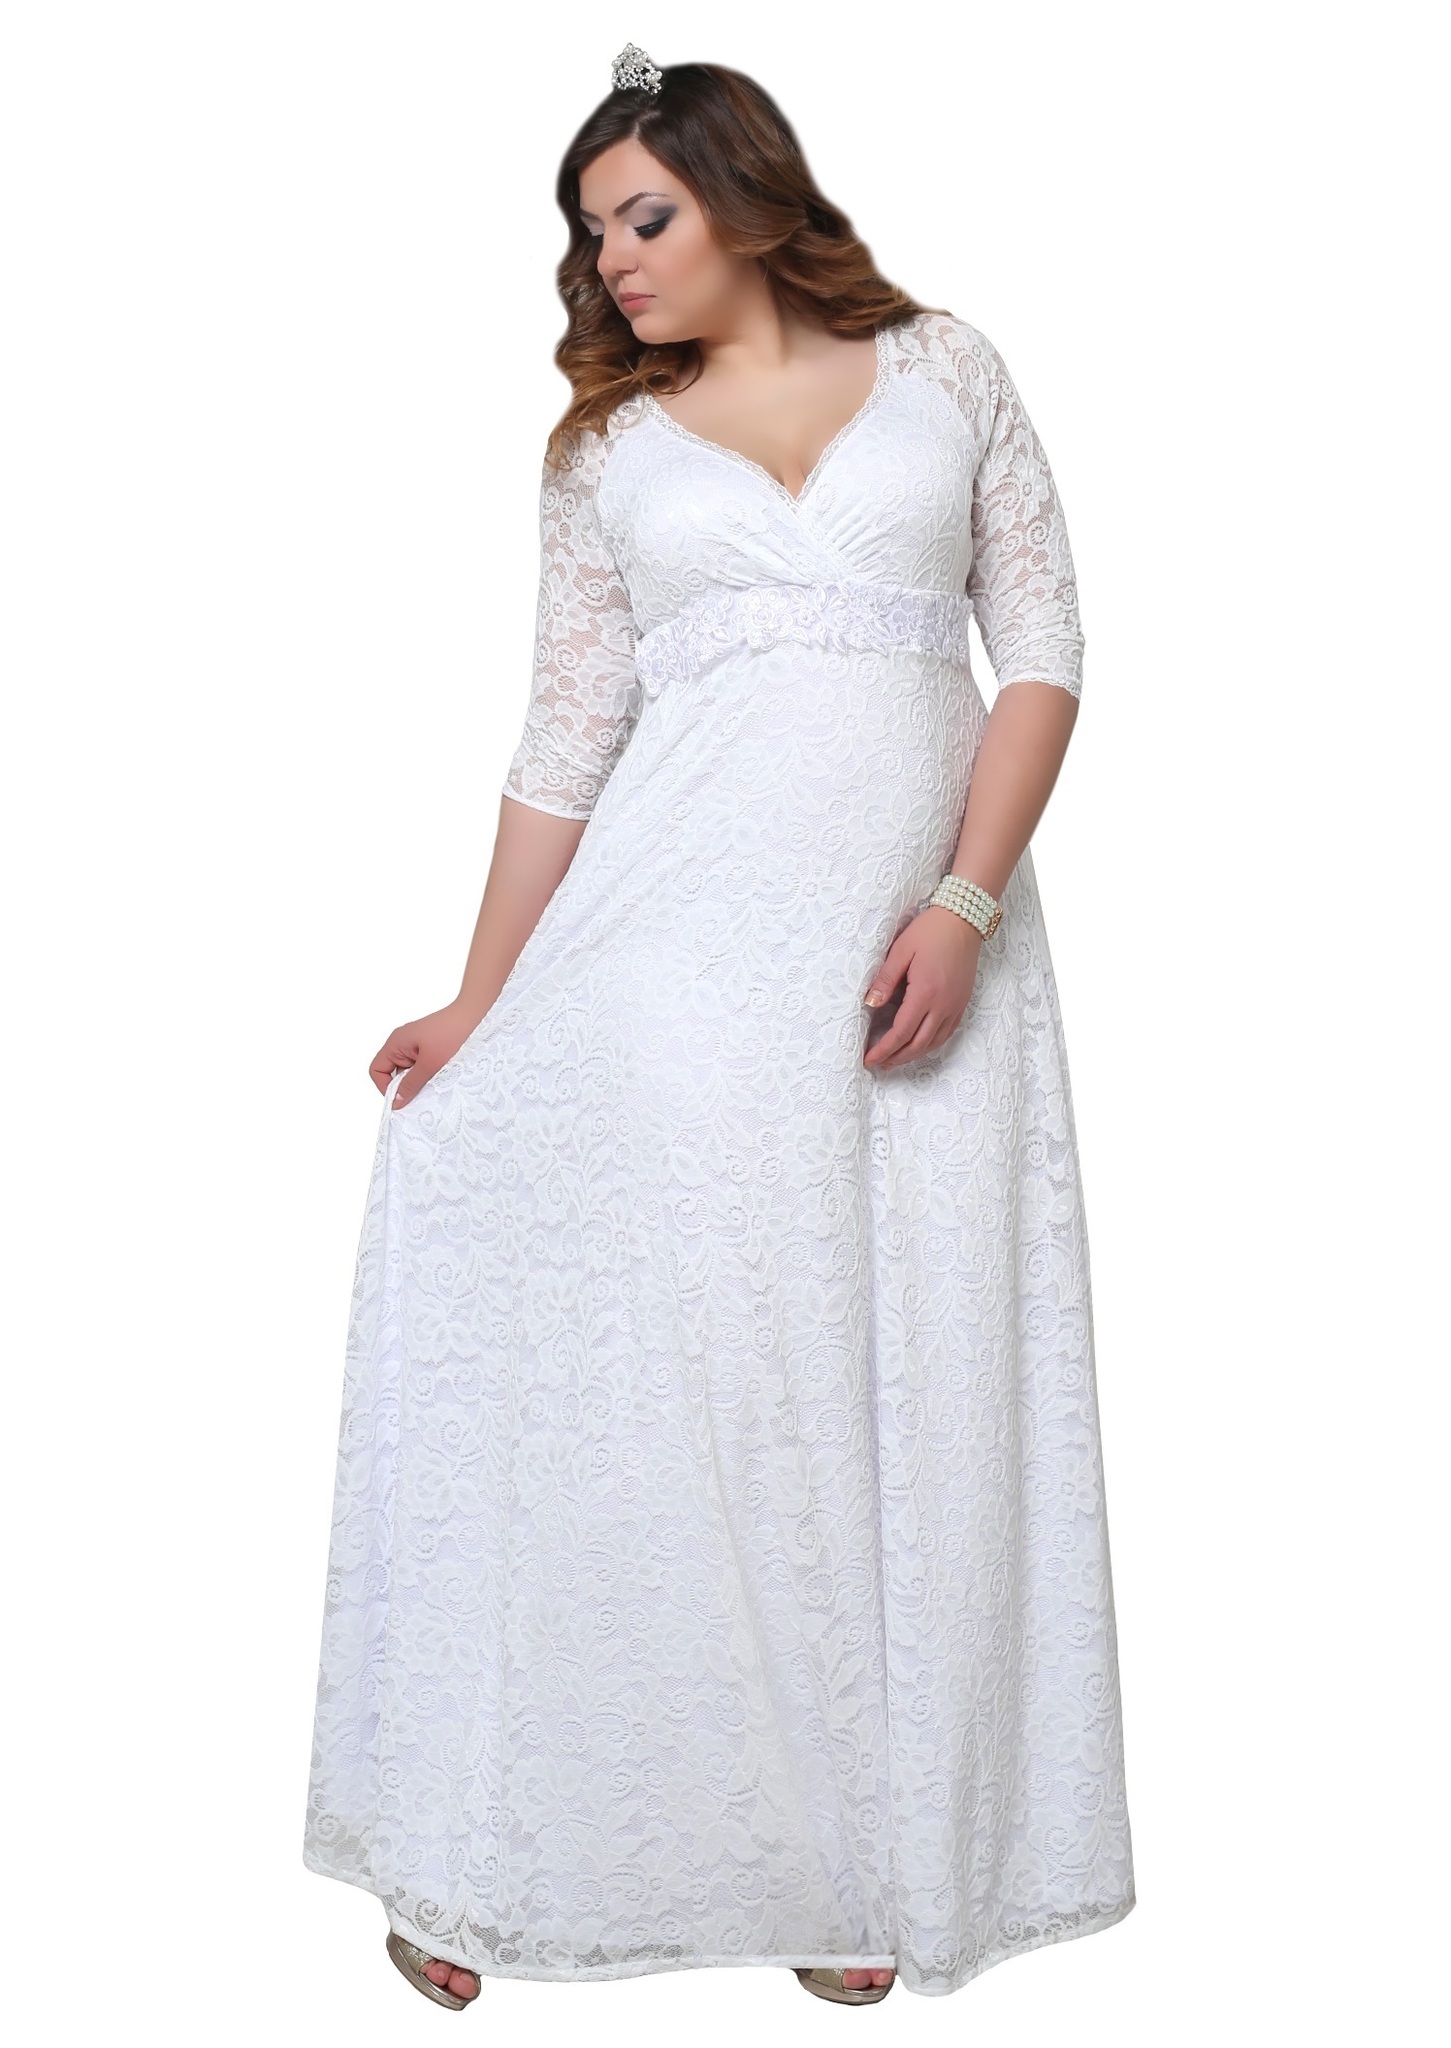 Белое платье 54 размер